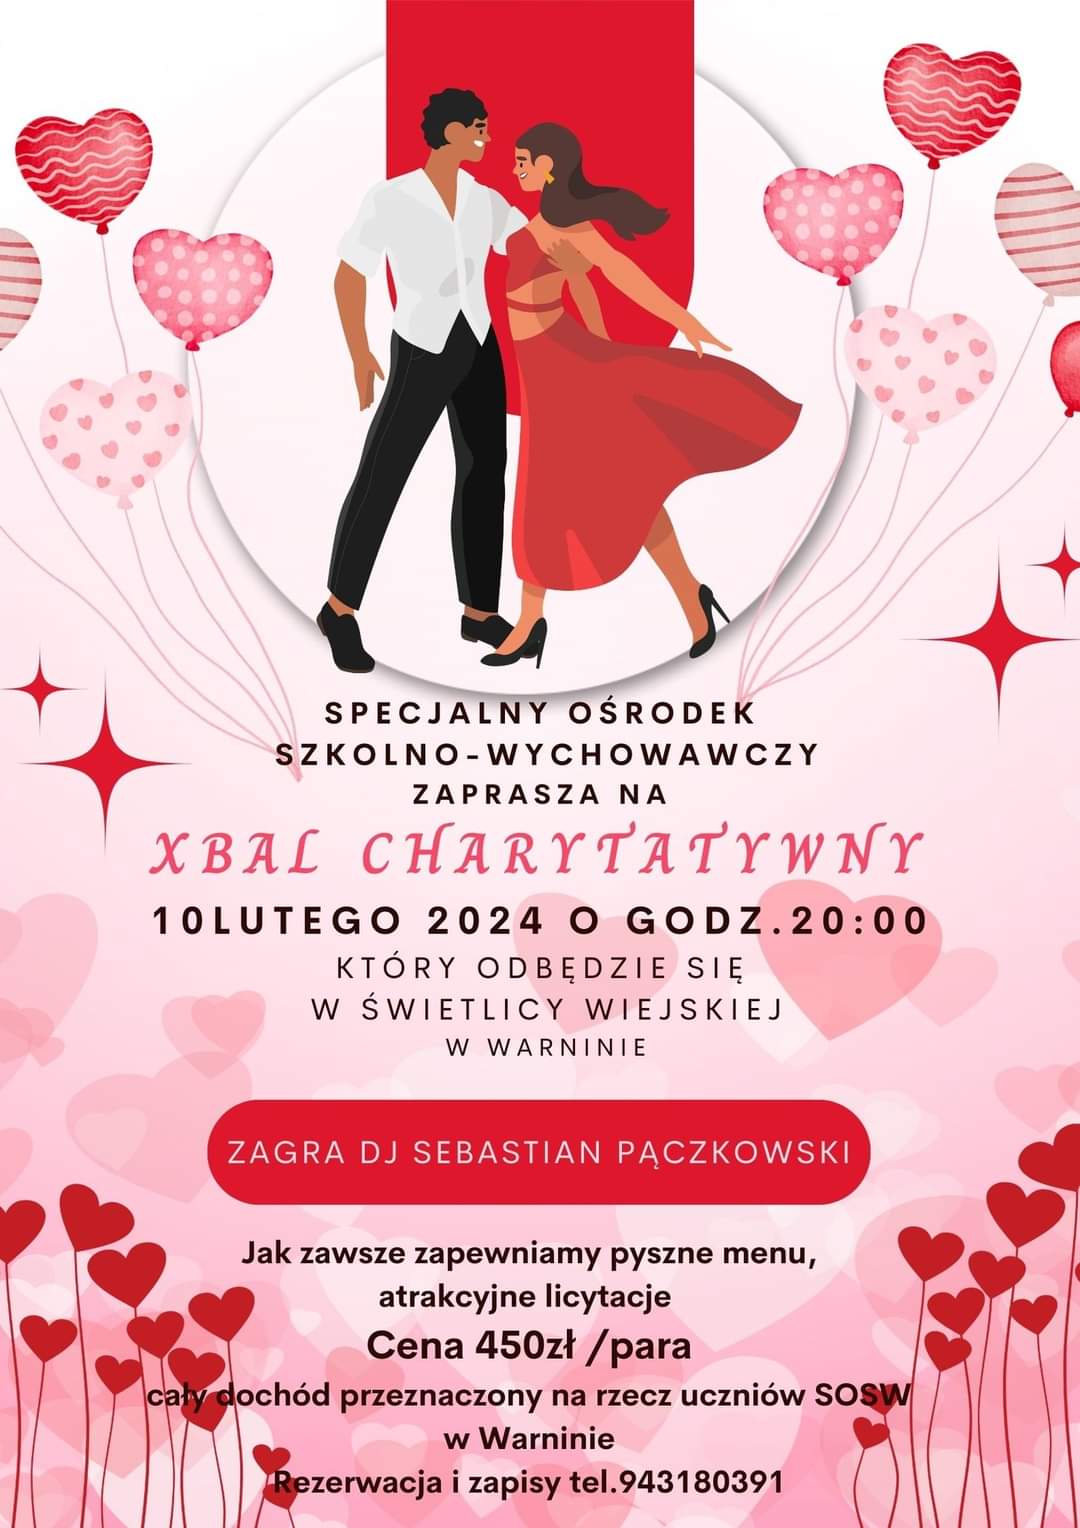 Plakat z zaproszeniem na Bal charytatywny w SOSW w Warninie 10 lutego 2024